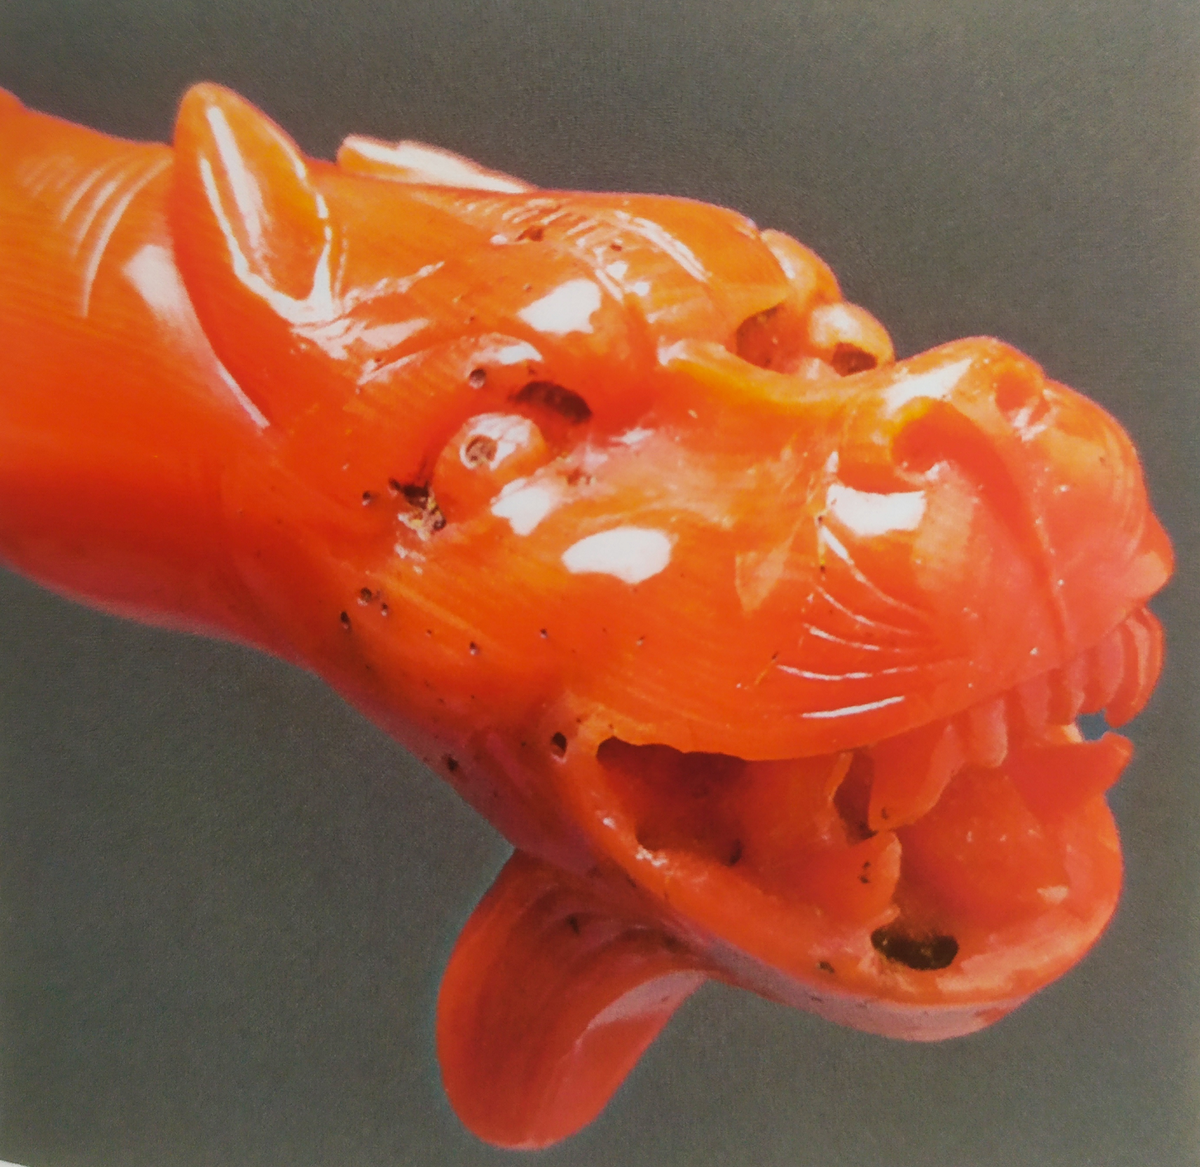  Голова дракона на ручке веера-опахала (с) Из коллекции Государственного Эрмитажа